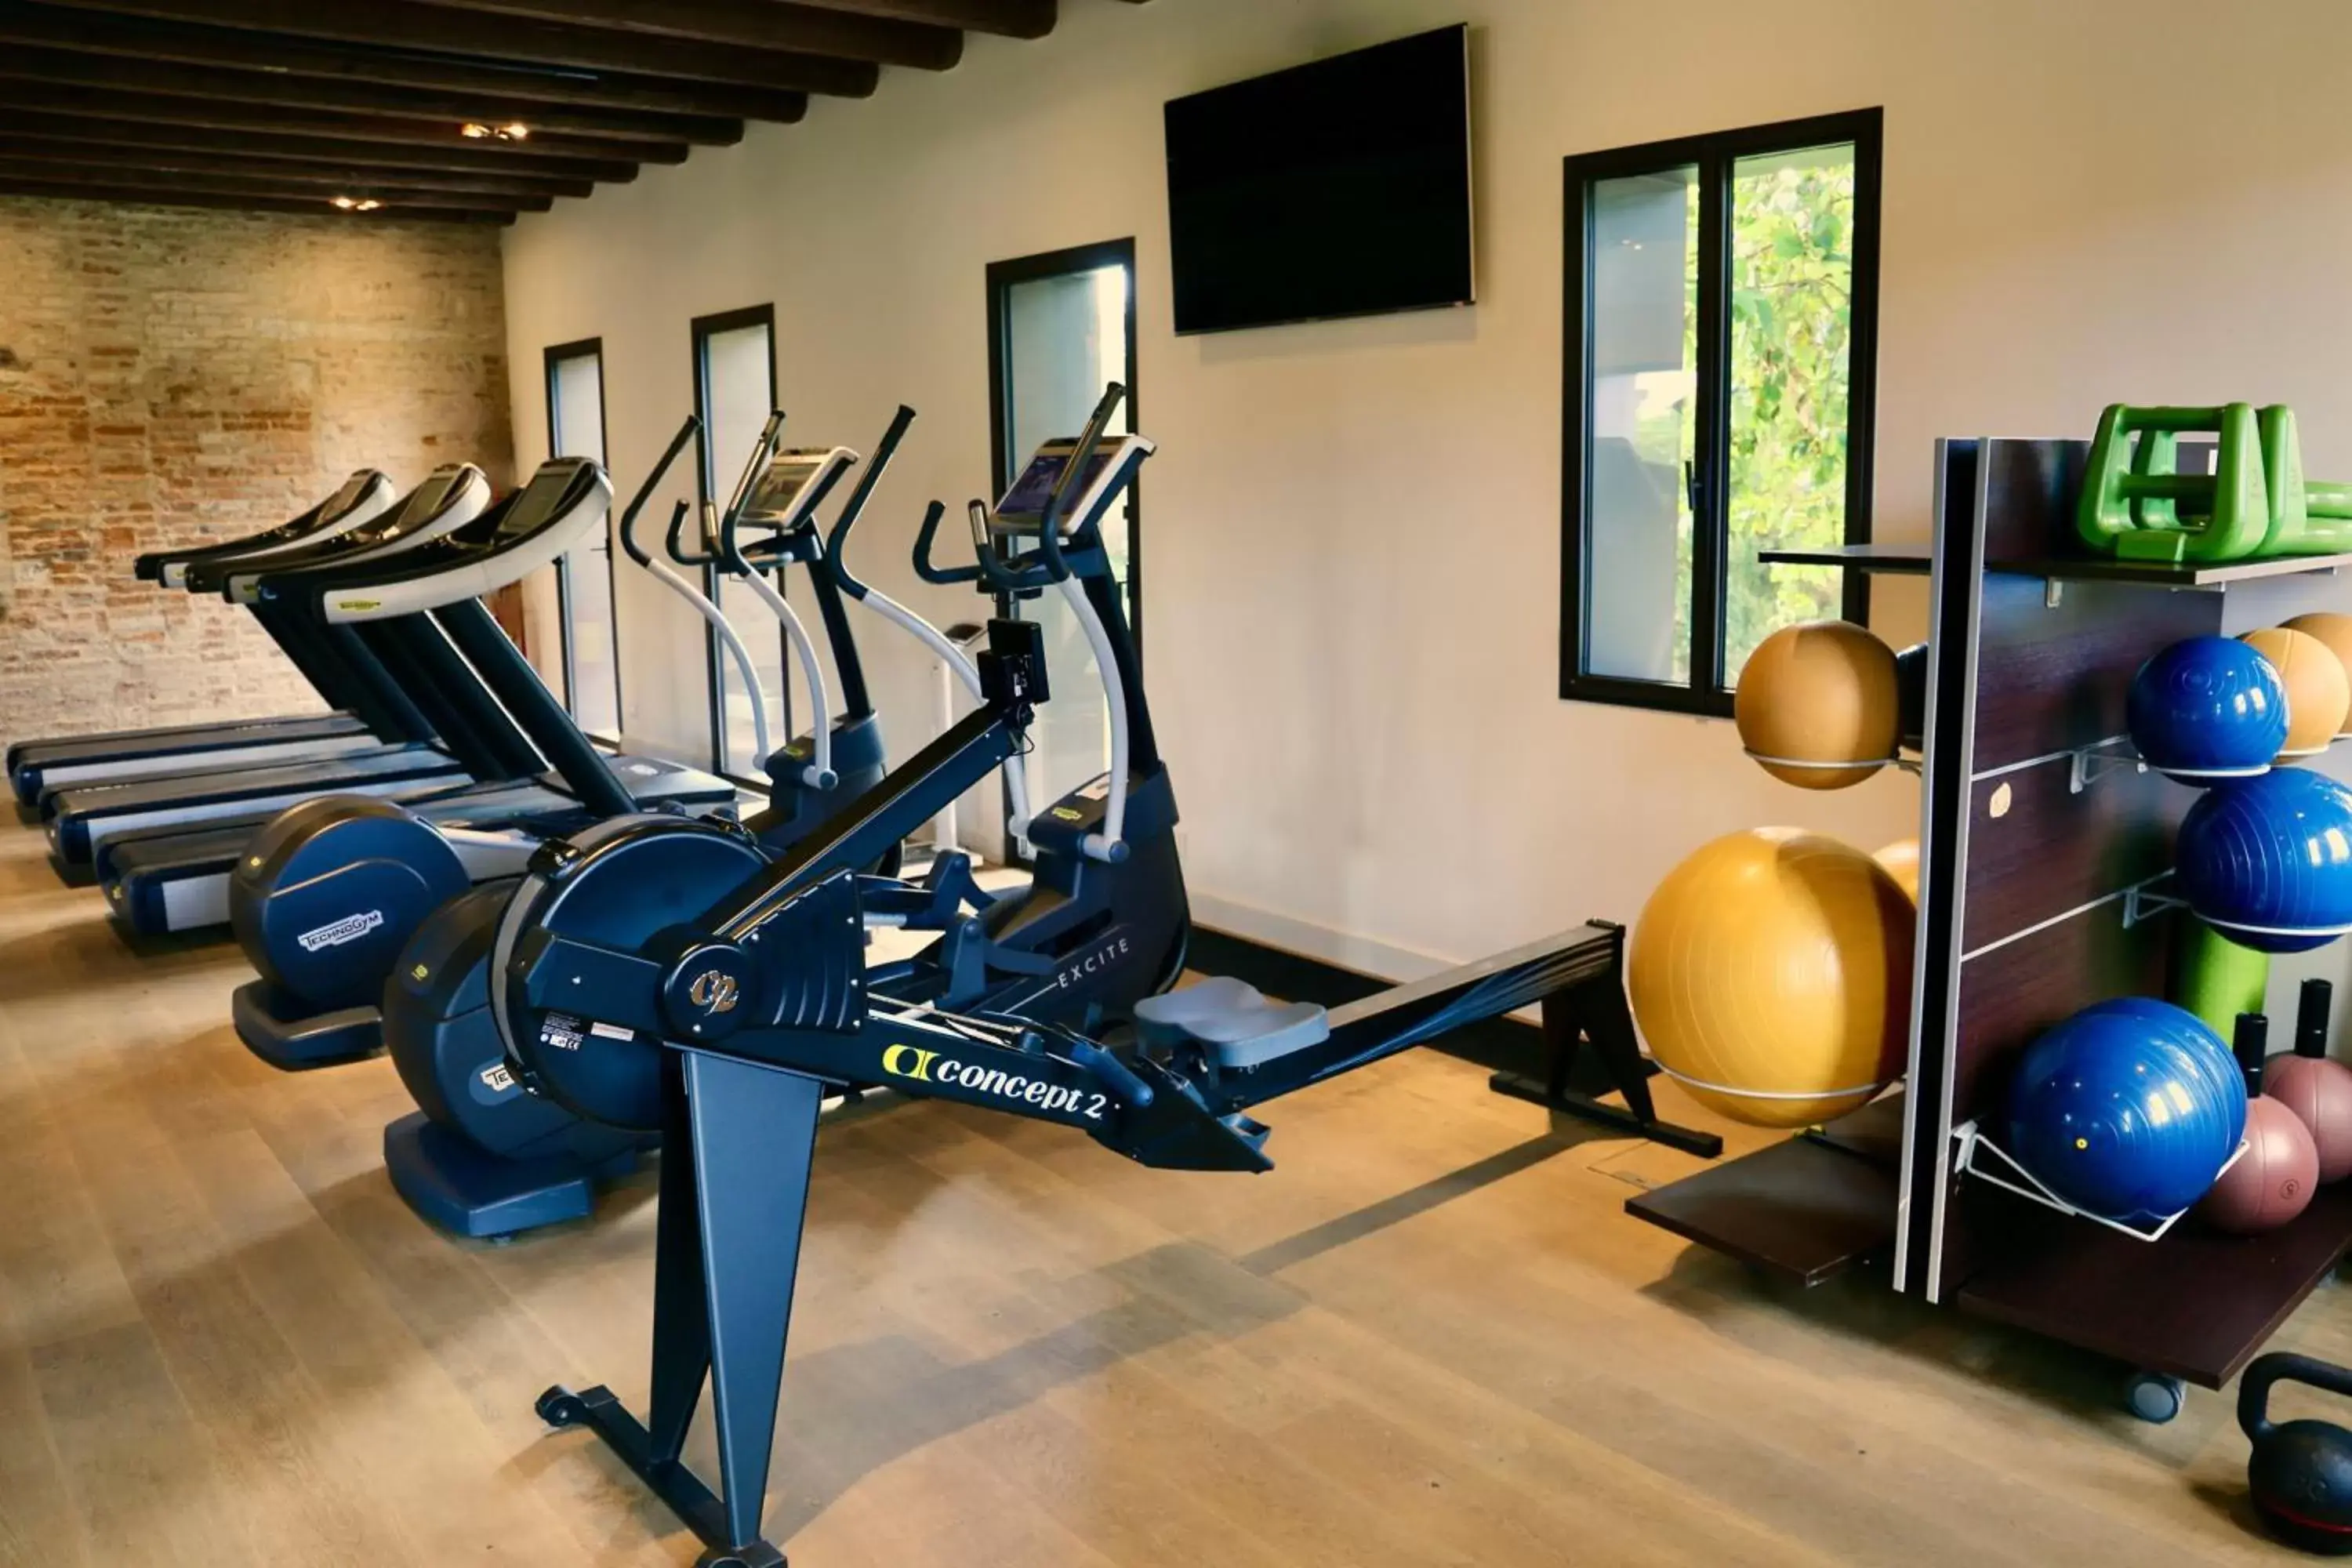 Fitness centre/facilities, Fitness Center/Facilities in JW Marriott Venice Resort & Spa